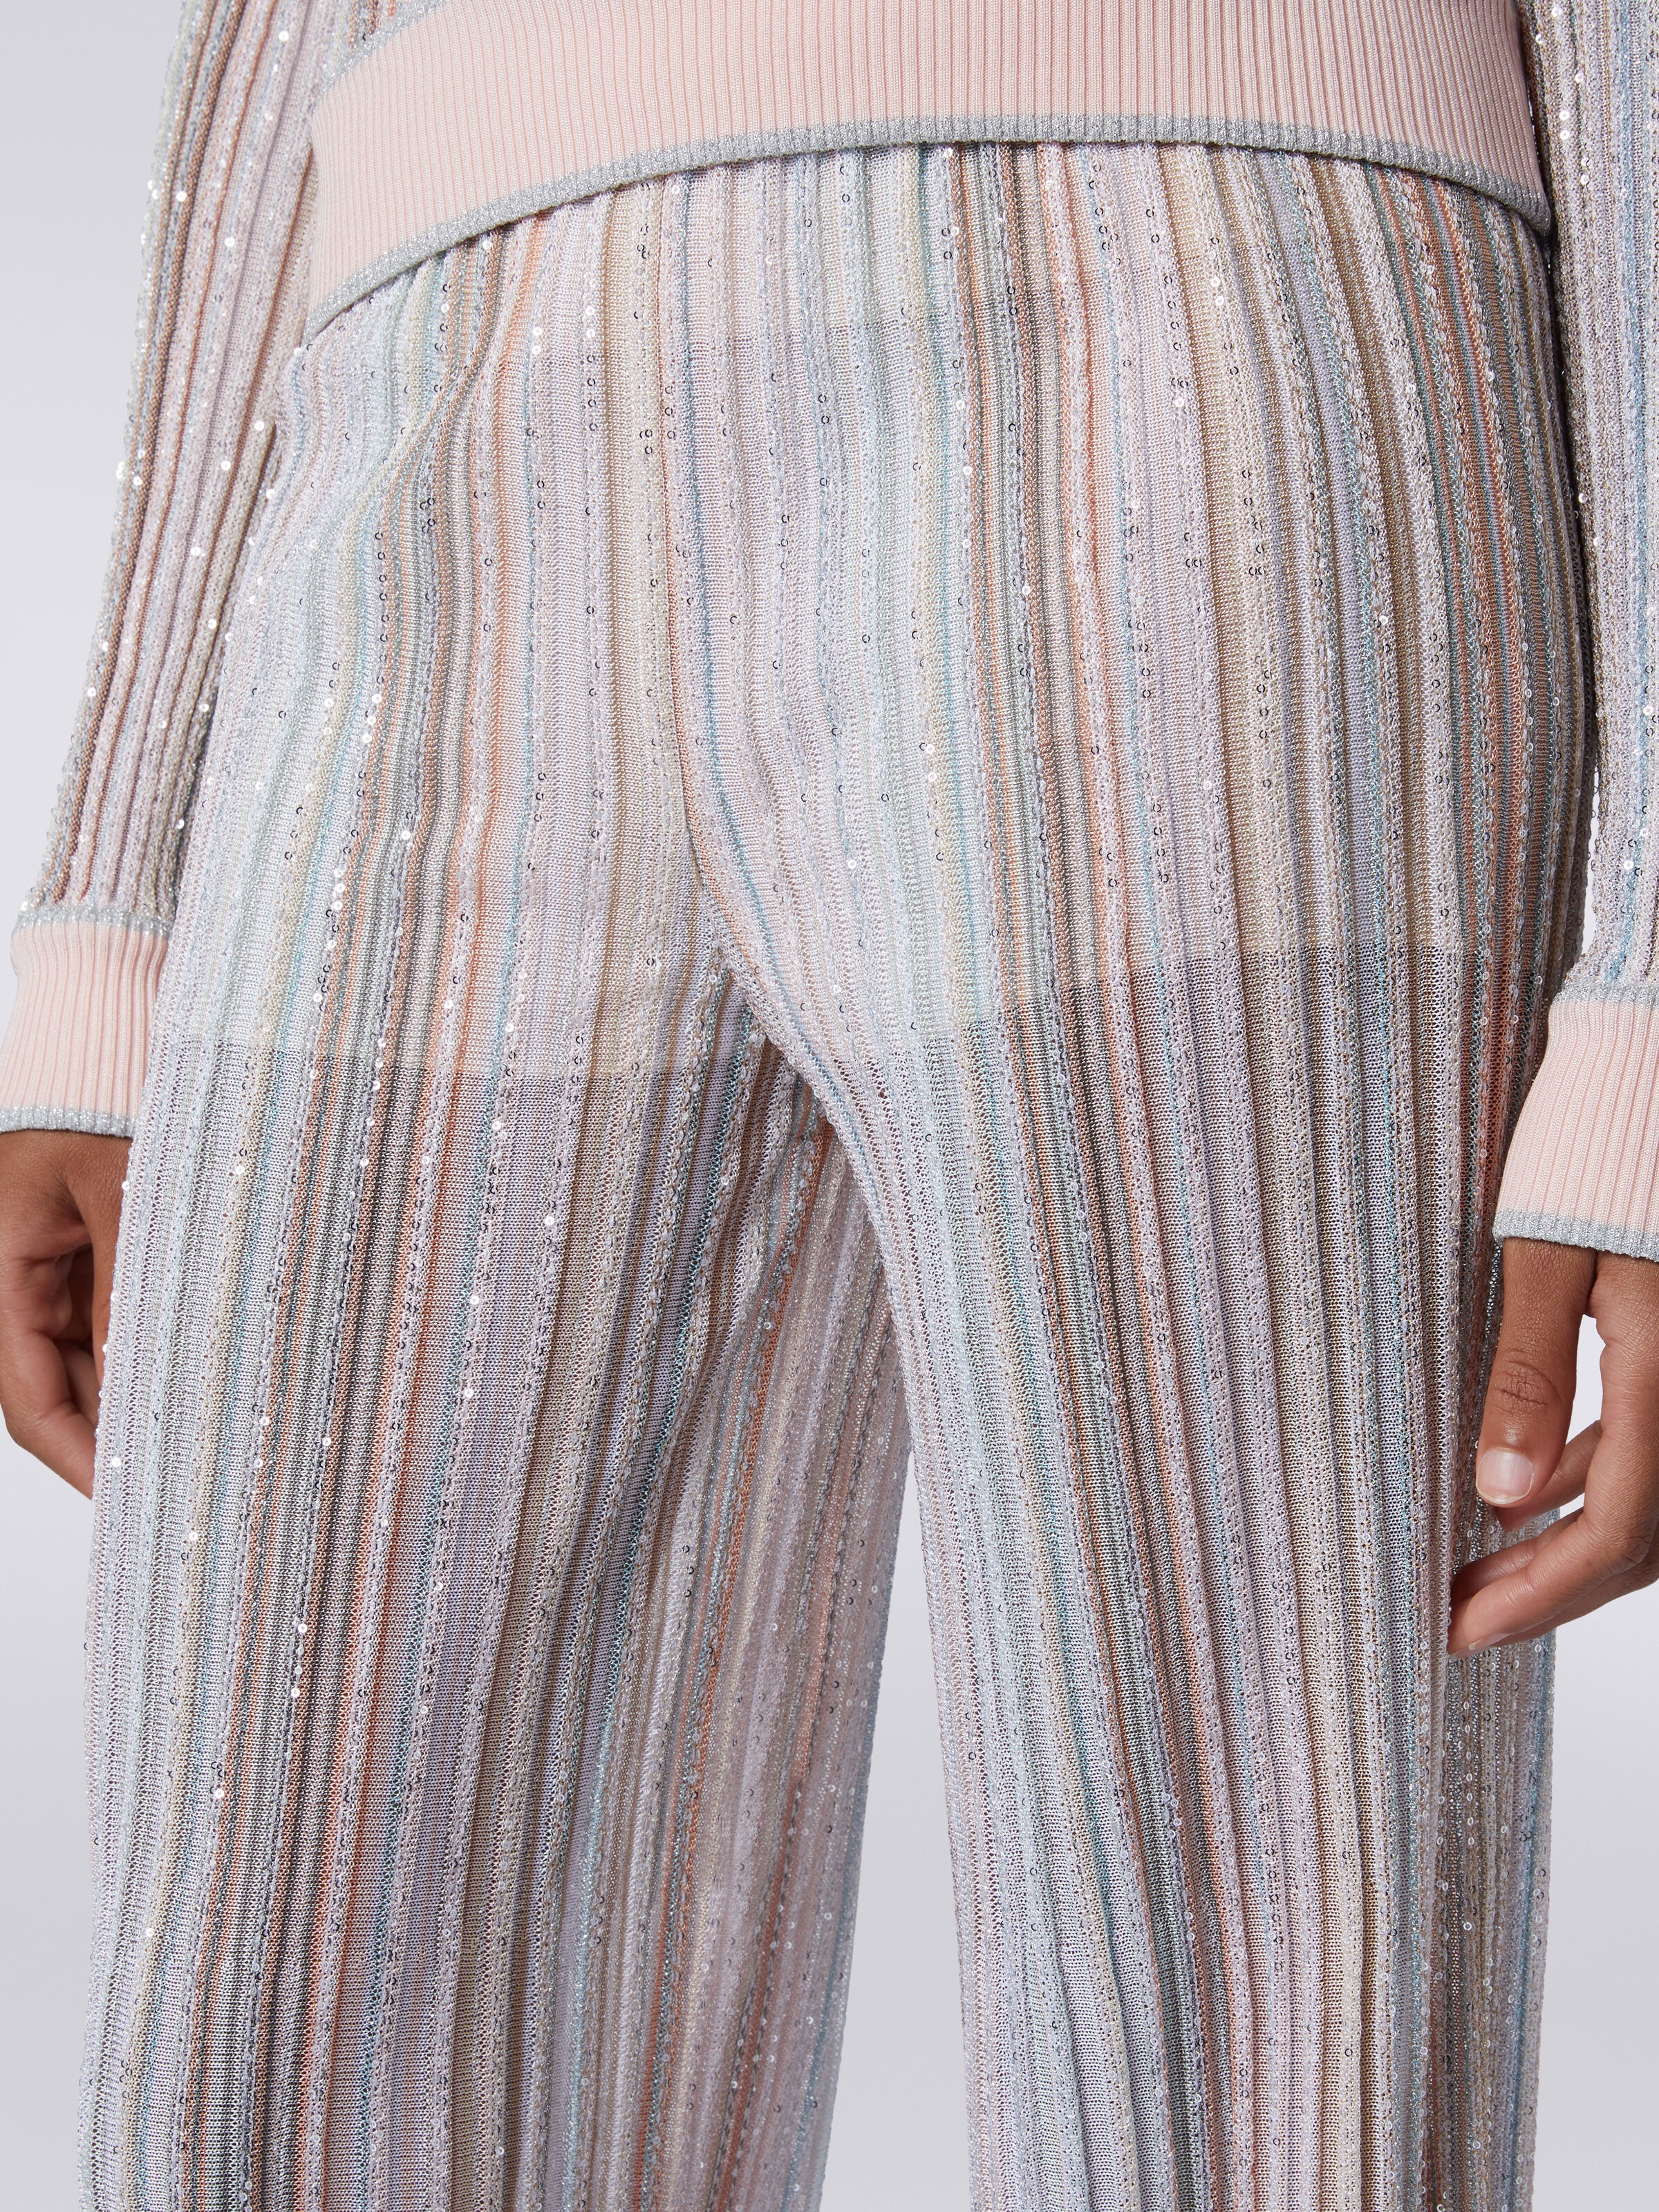 Pantaloni in maglia a righe verticali con paillettes, Multicolore  - 4